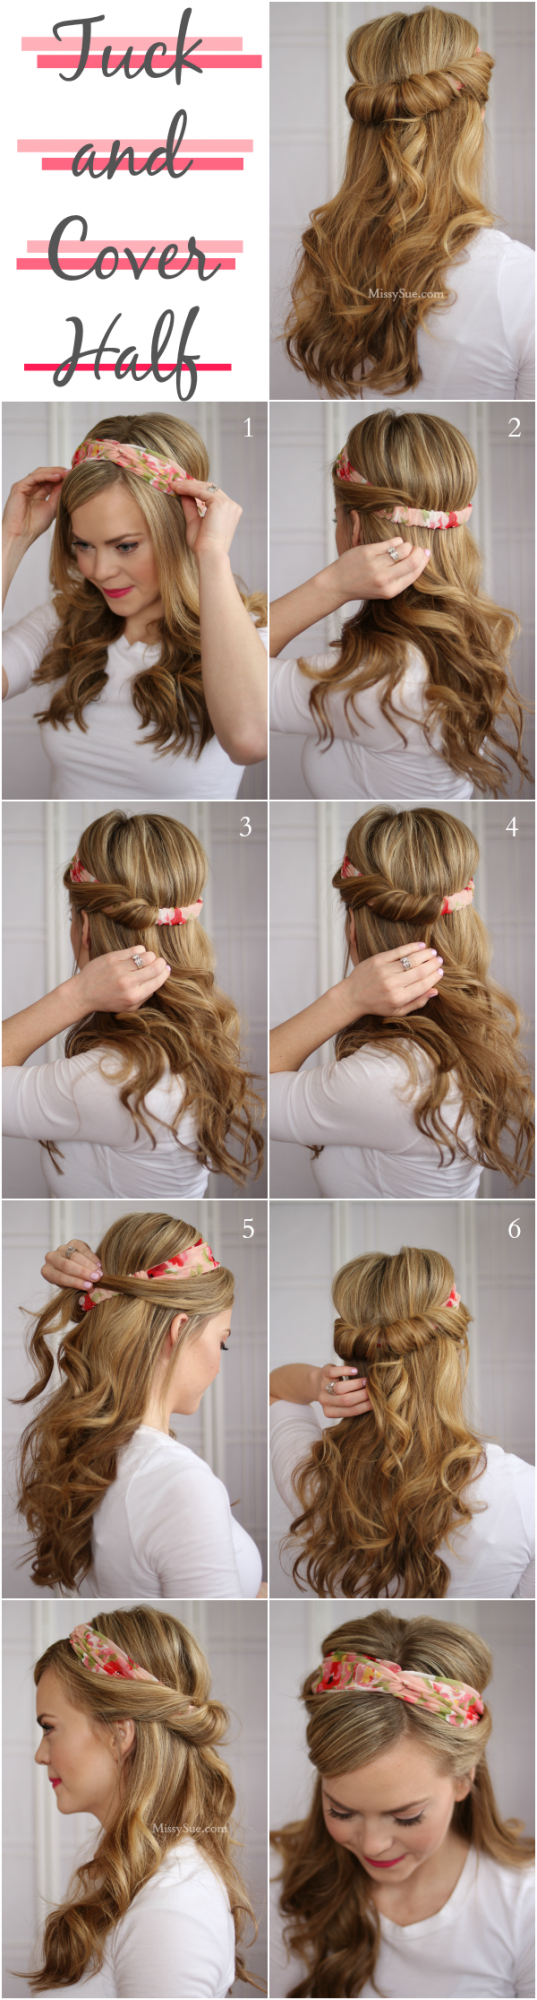 hairstyle tutorials (7)